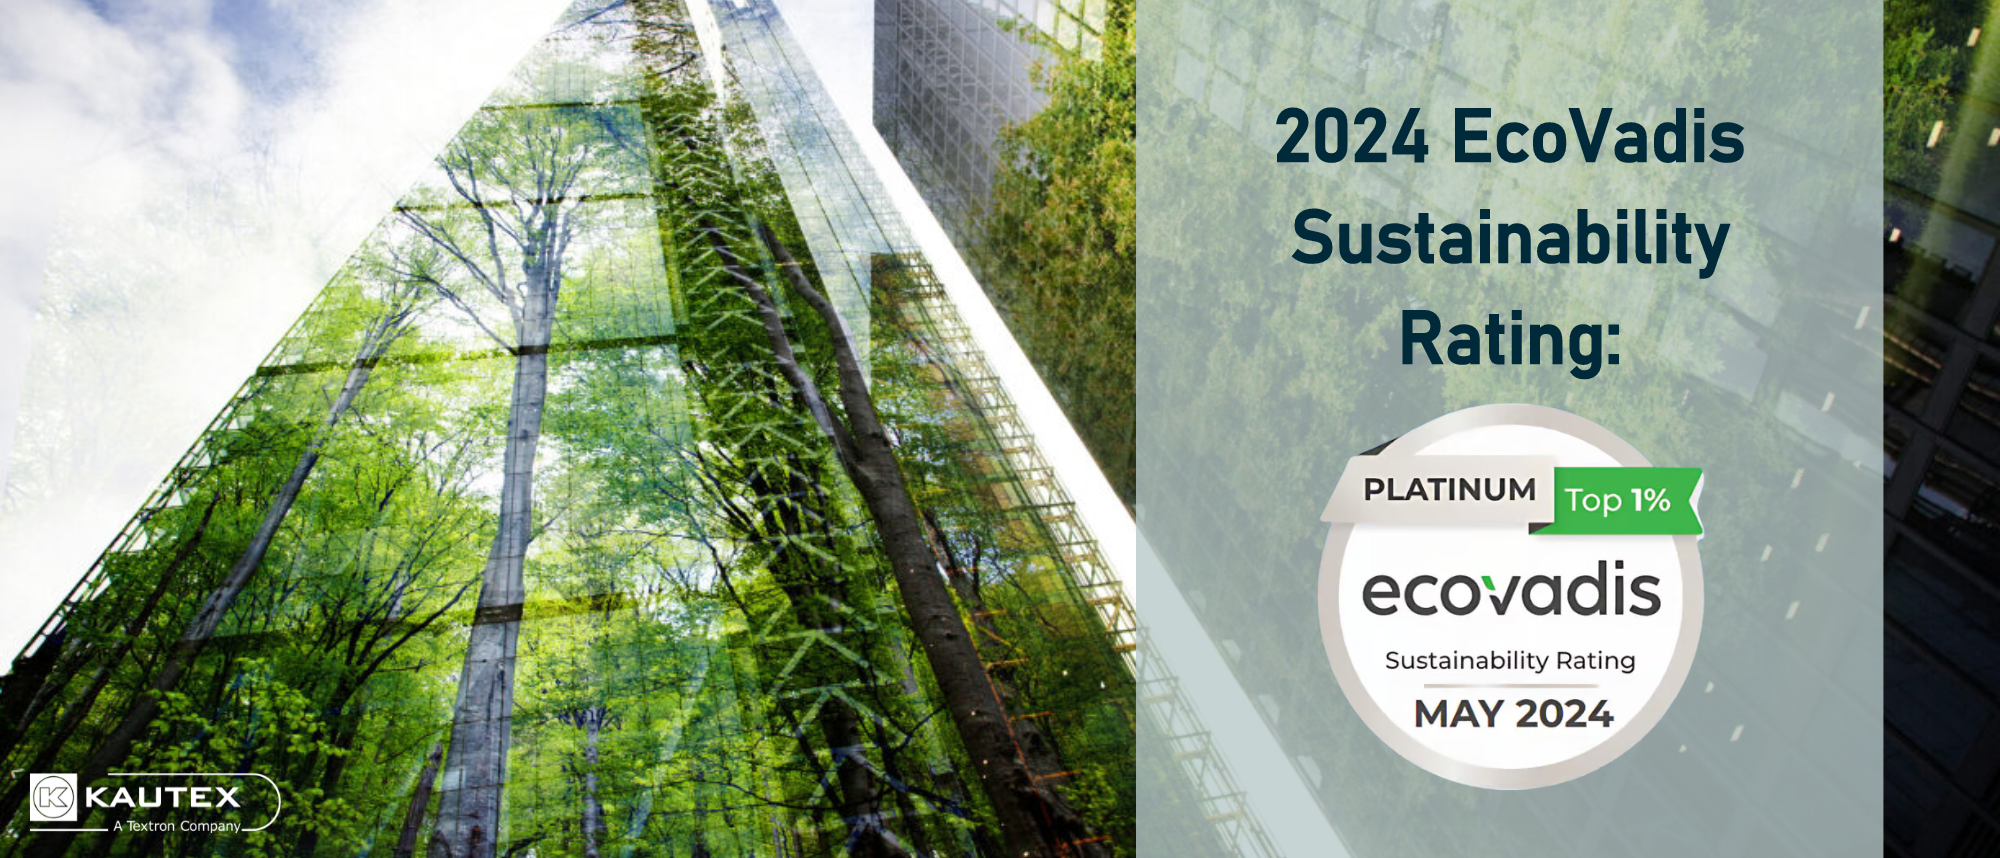 EcoVadis Sustainability Rating - Platin